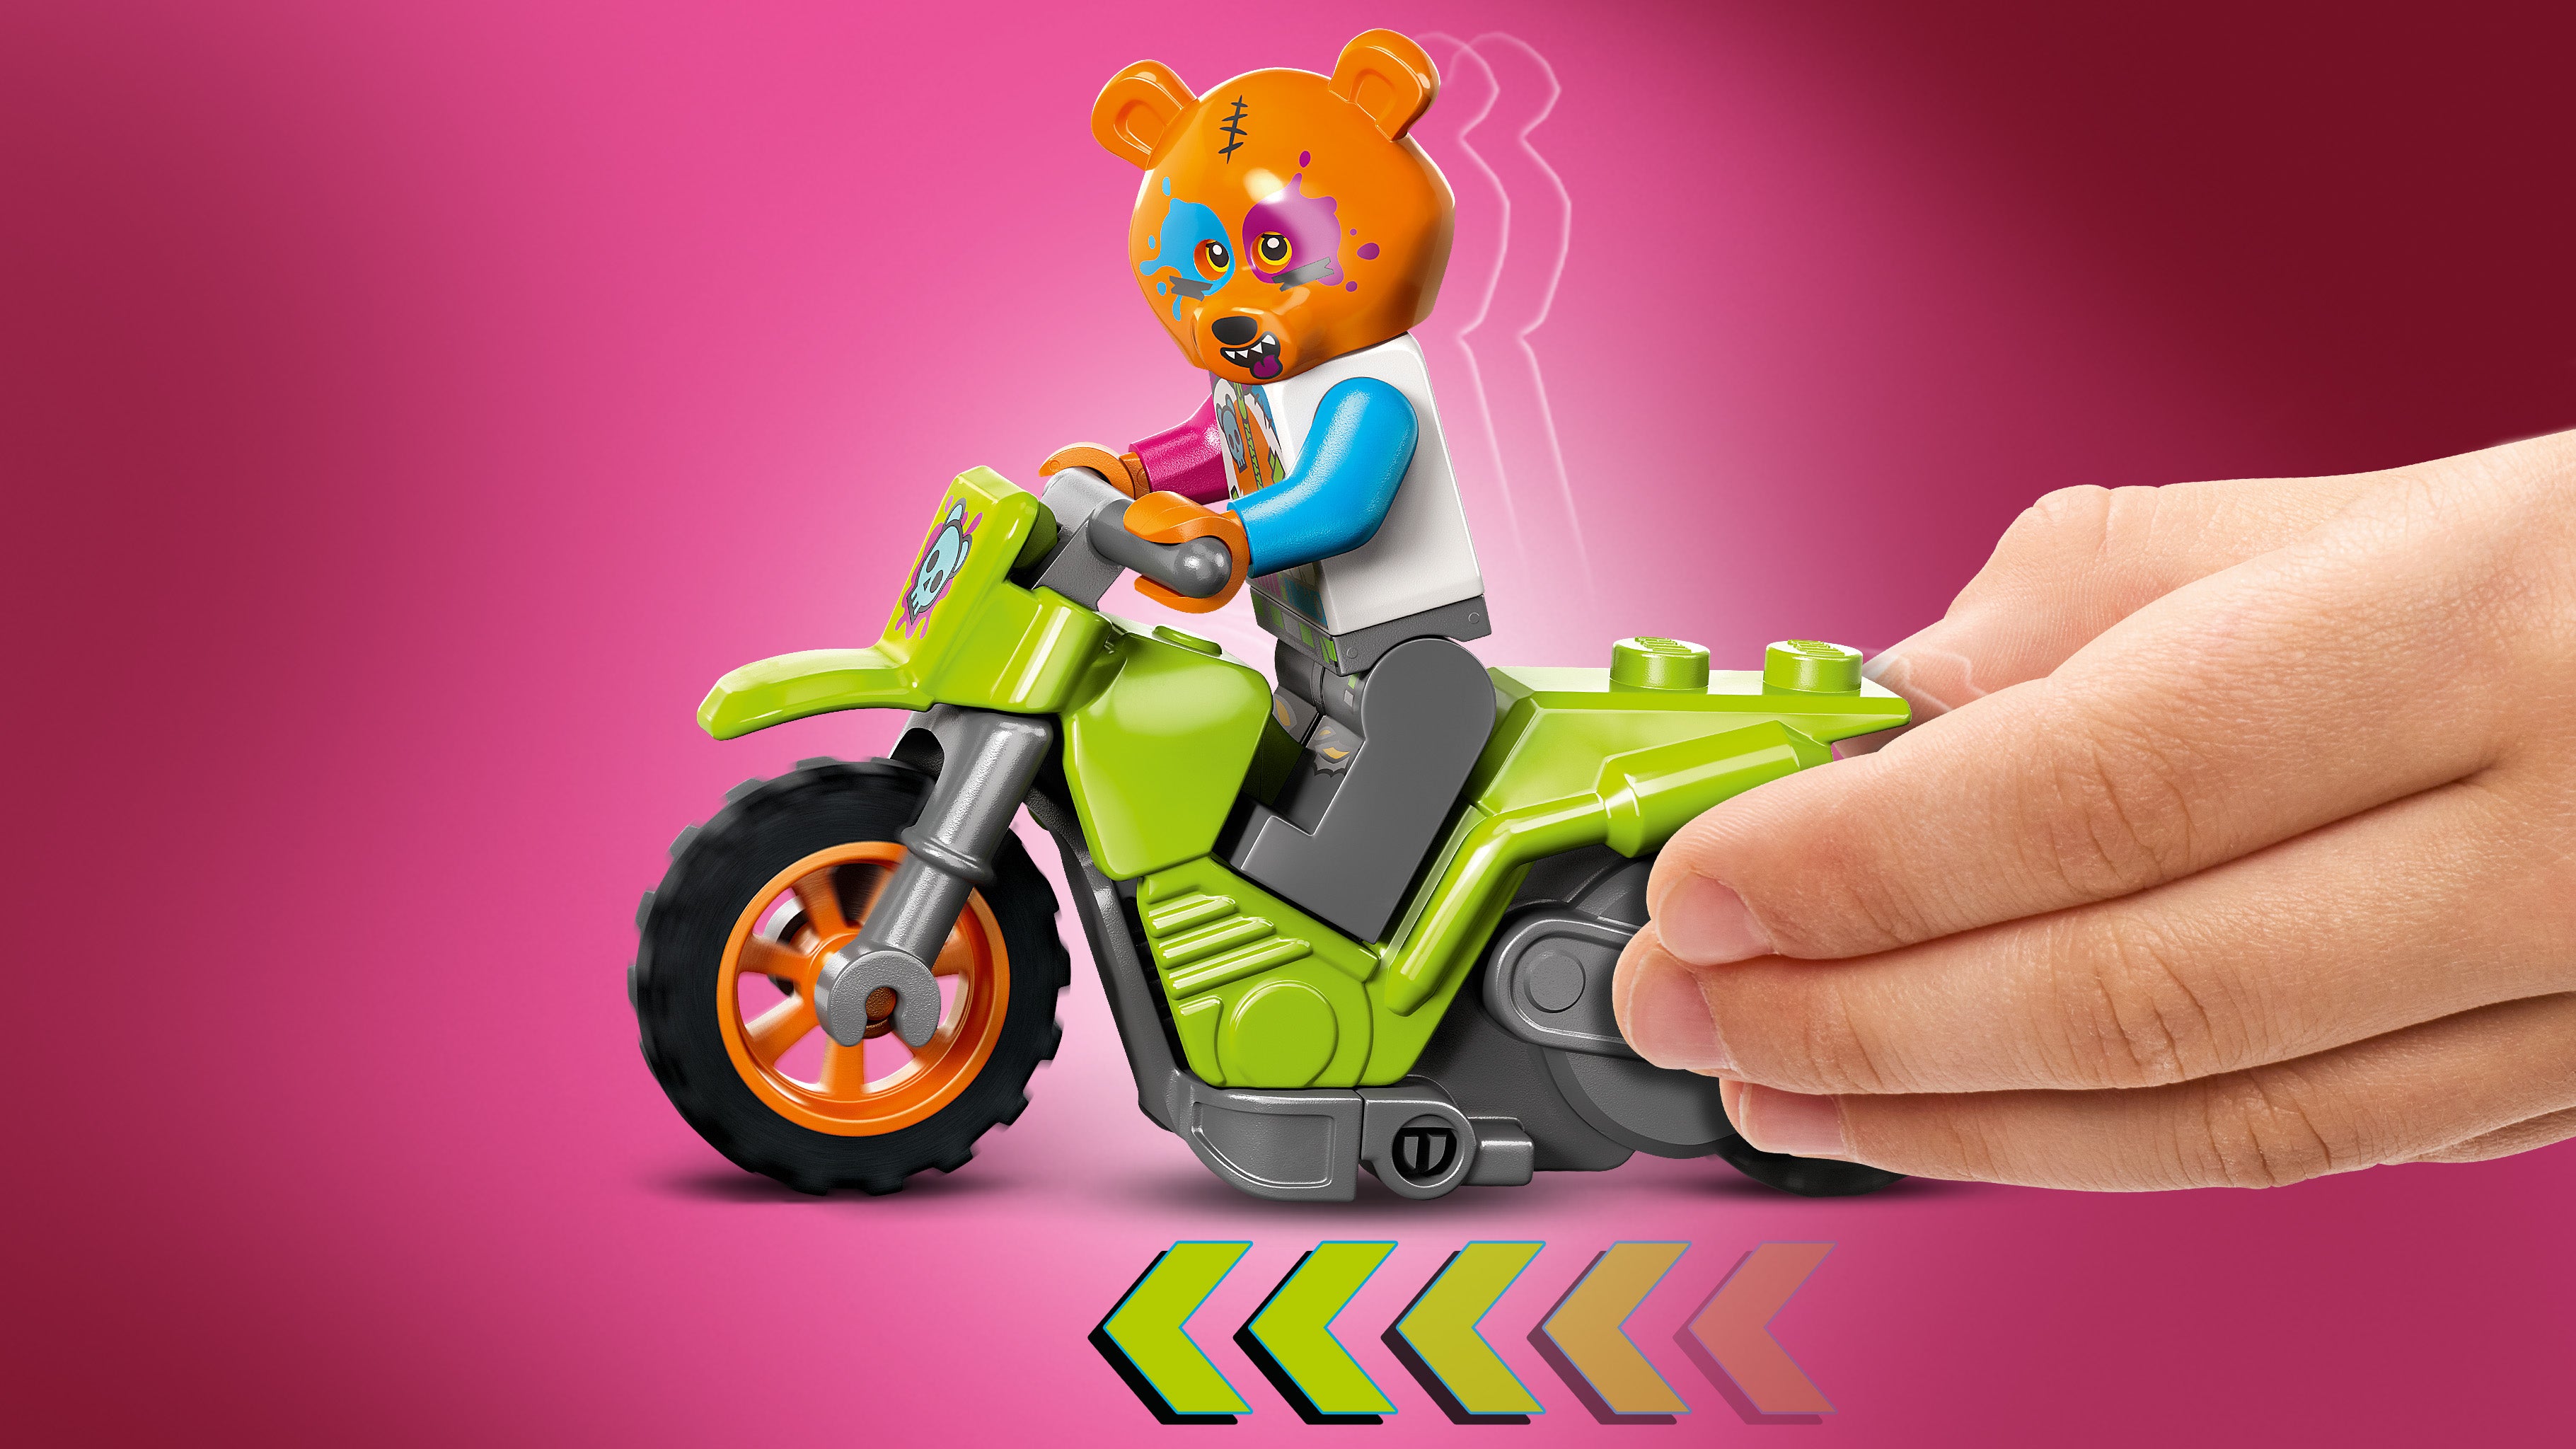 Lego 60356 Bear Stunt Bike